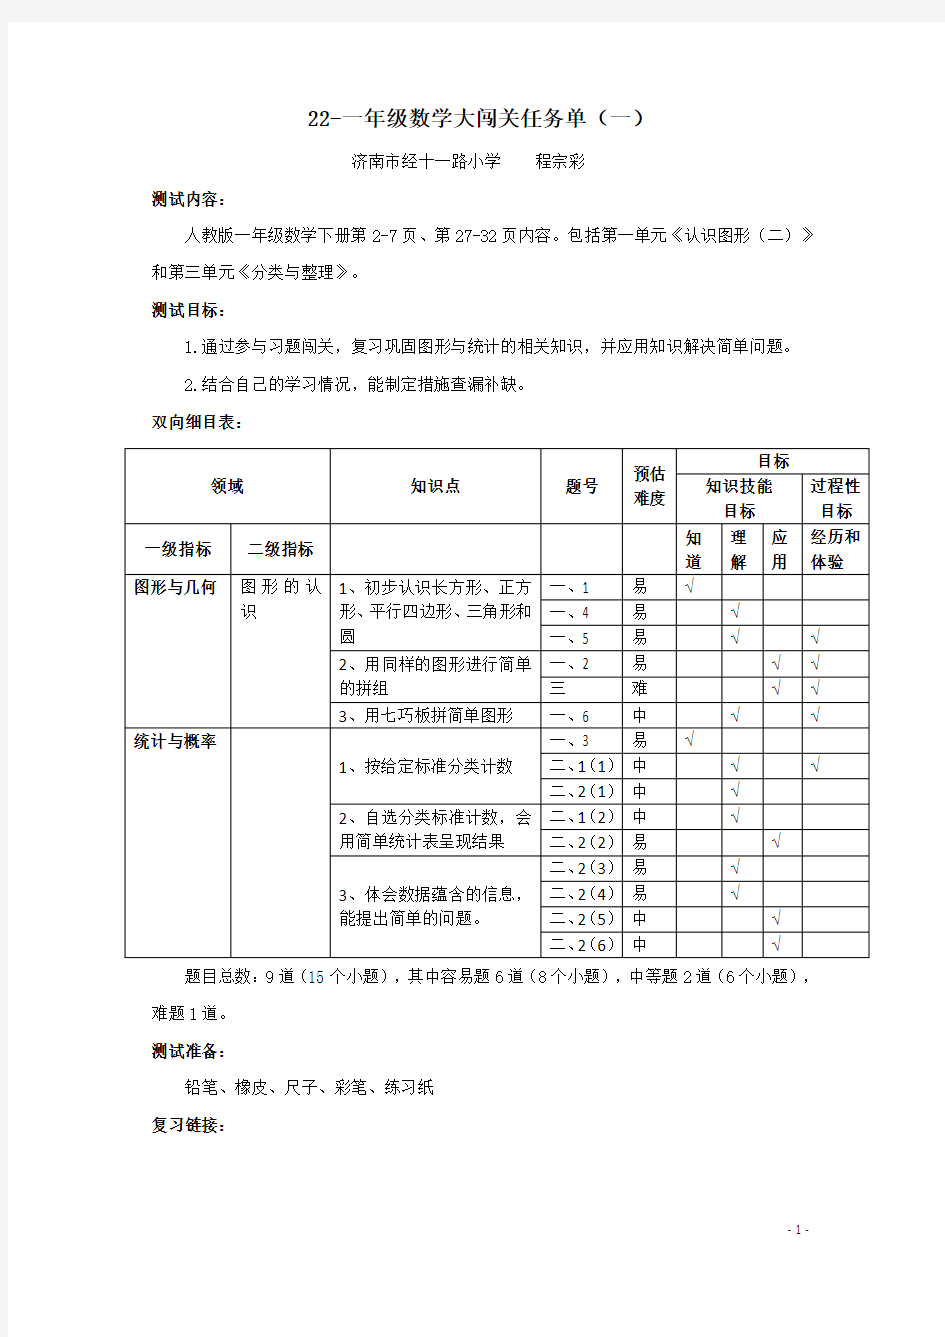 22-一年级数学大闯关任务单(一)-程宗彩(1)